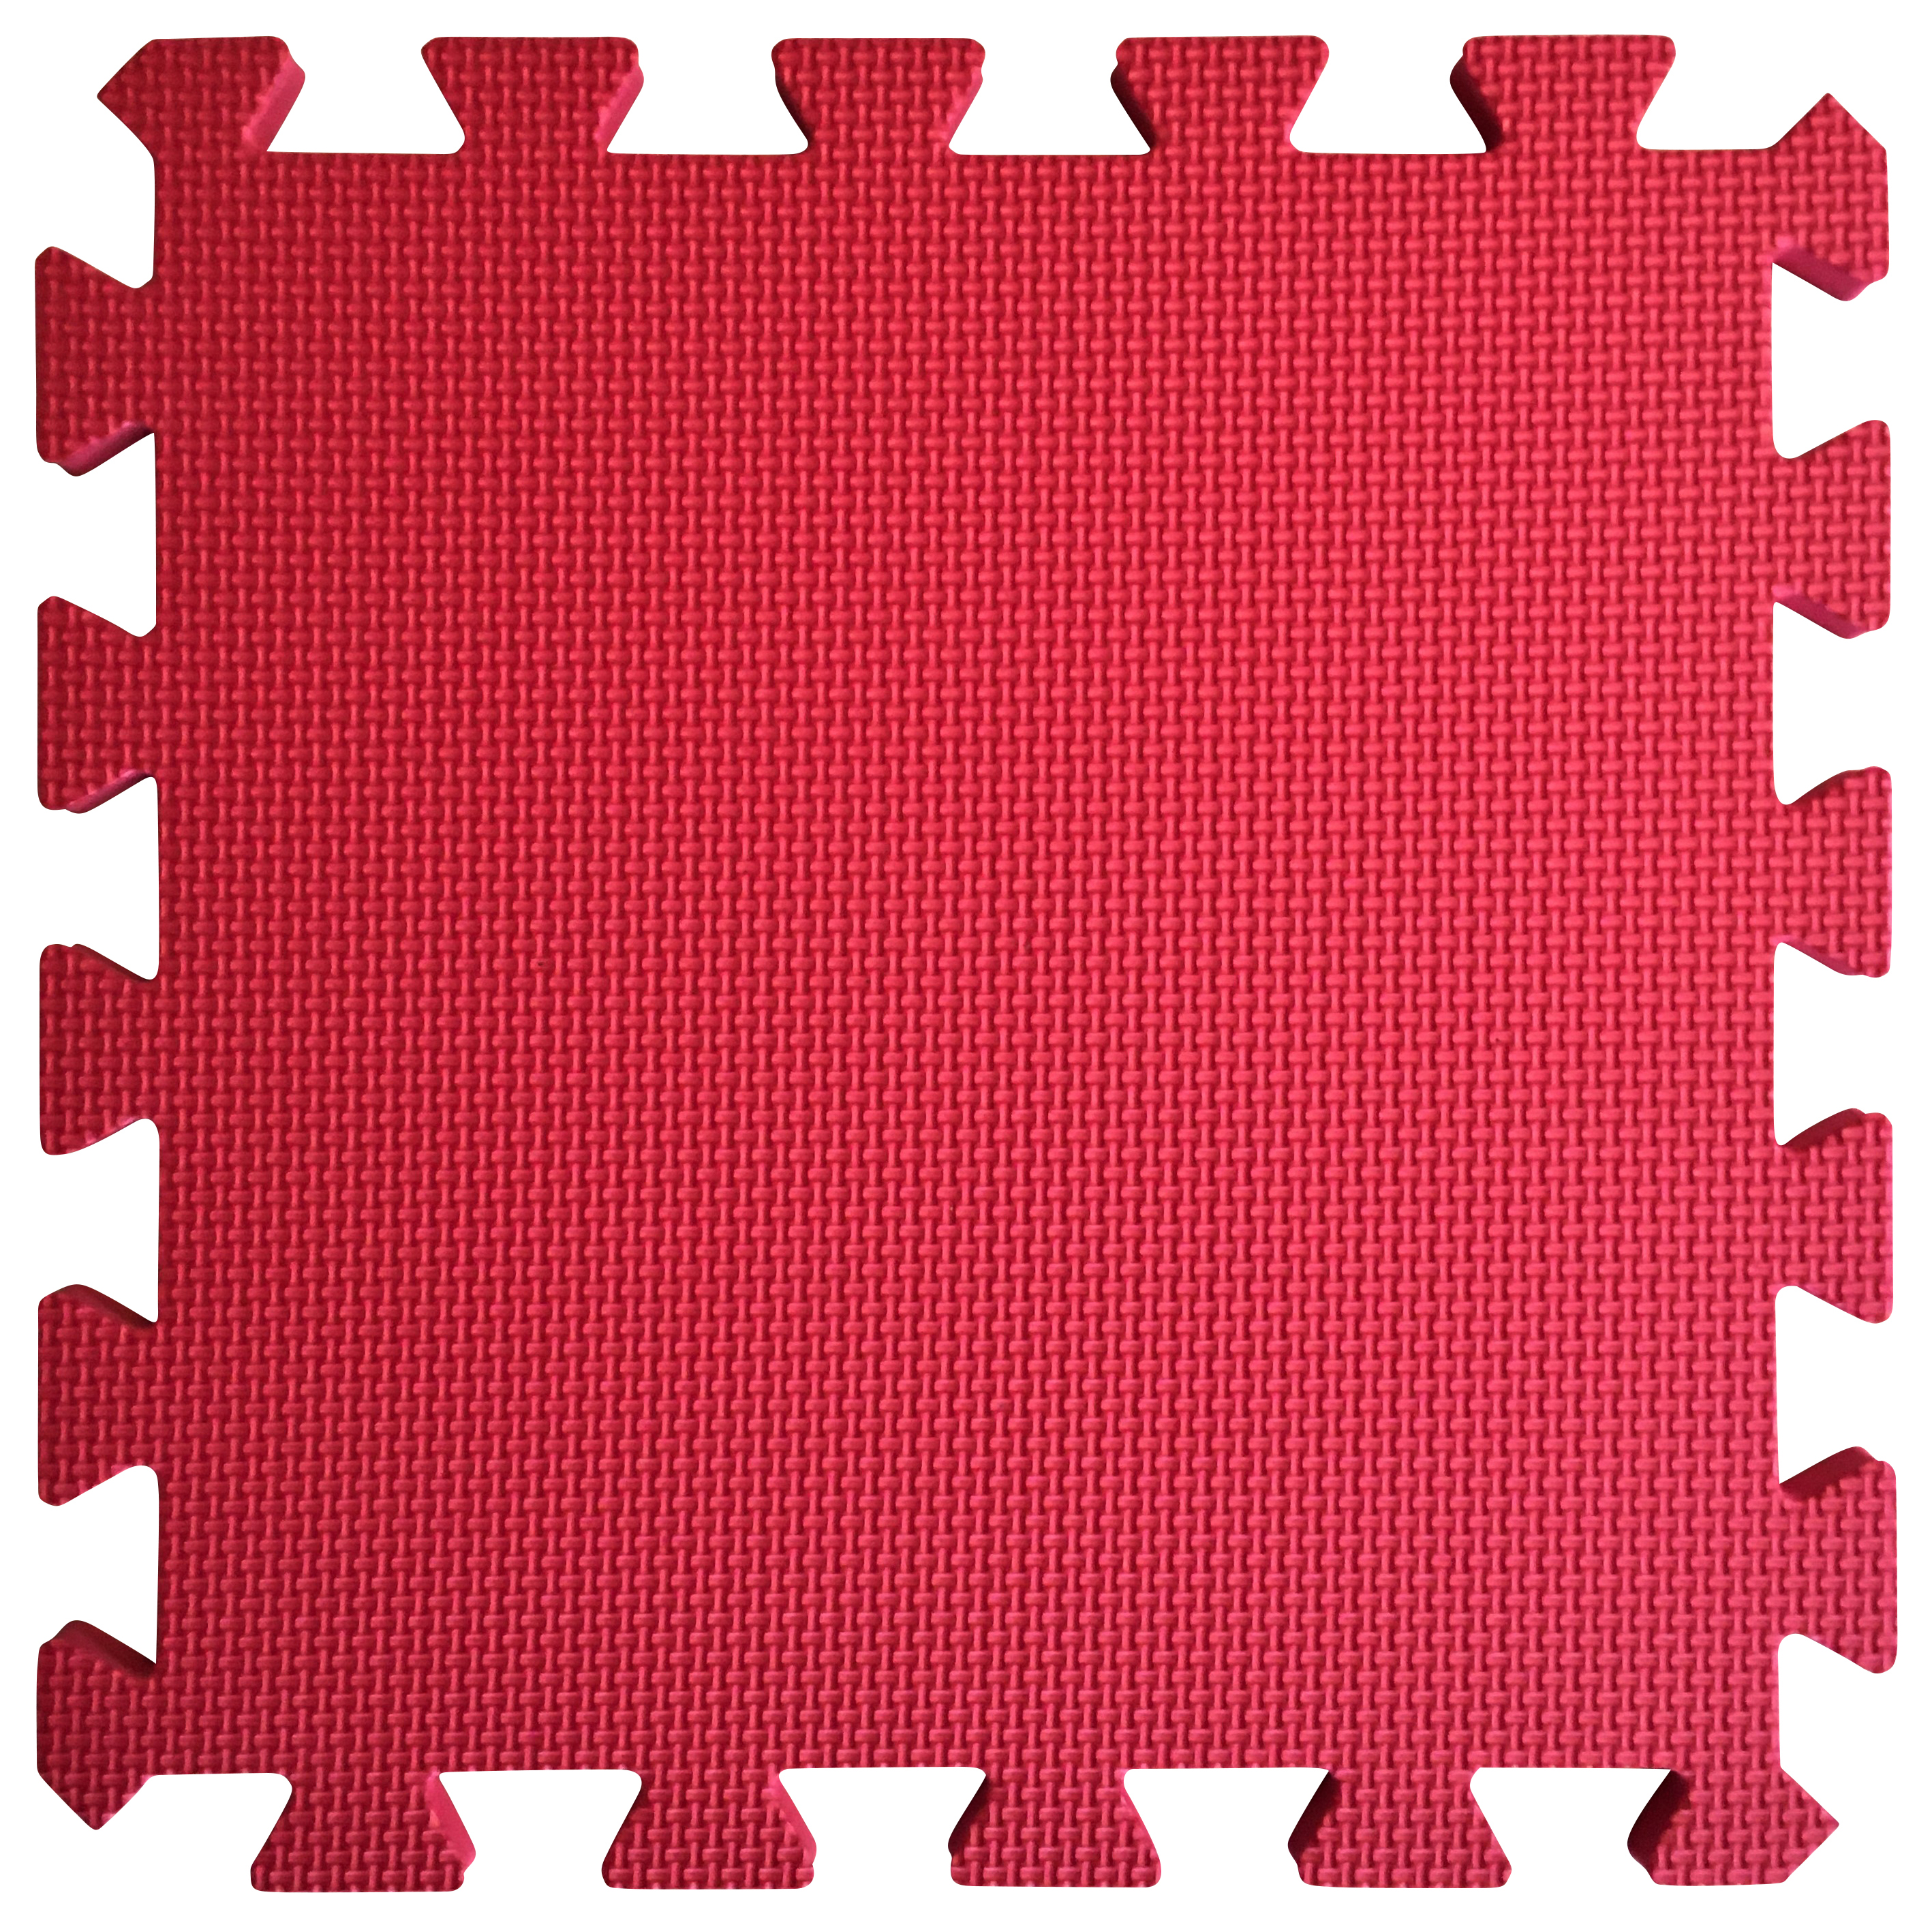 Image of Warm Floor Red Interlocking Floor Tiles for Garden Buildings - 3 x 5ft